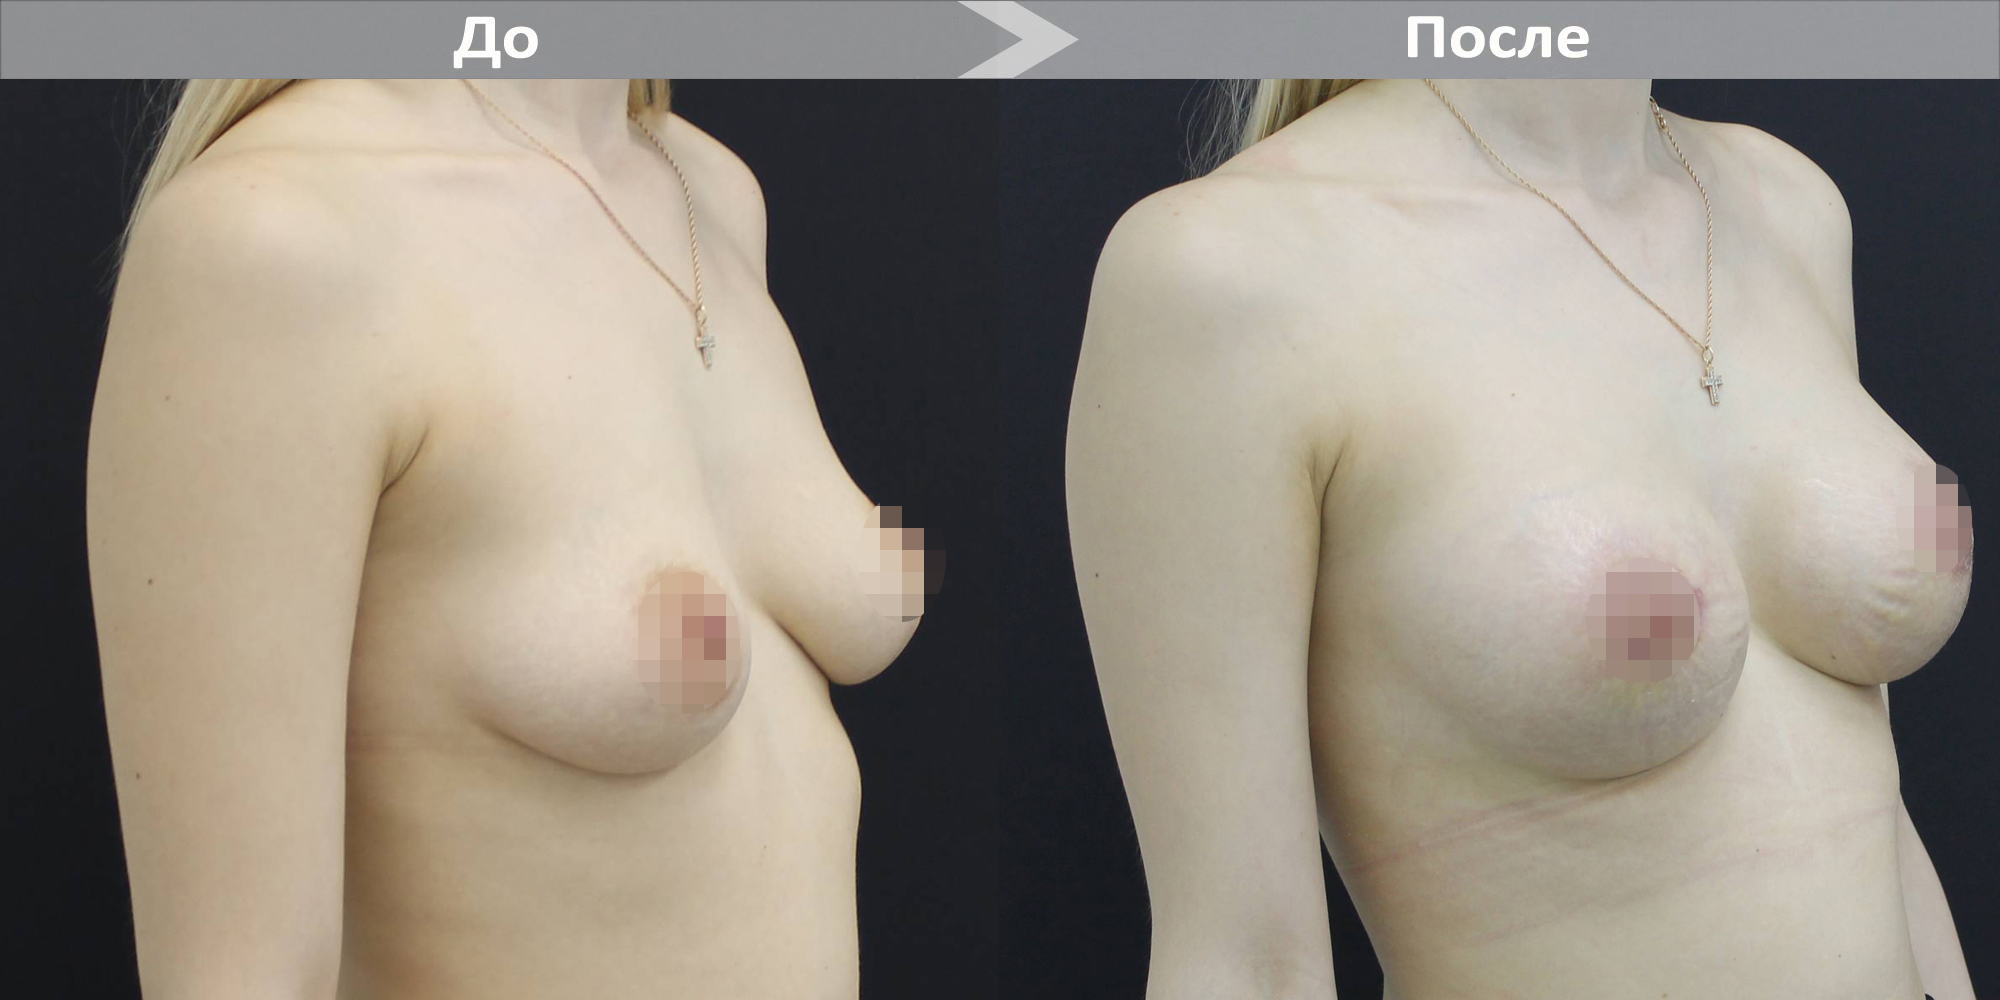 операция груди до 4 размера фото 29